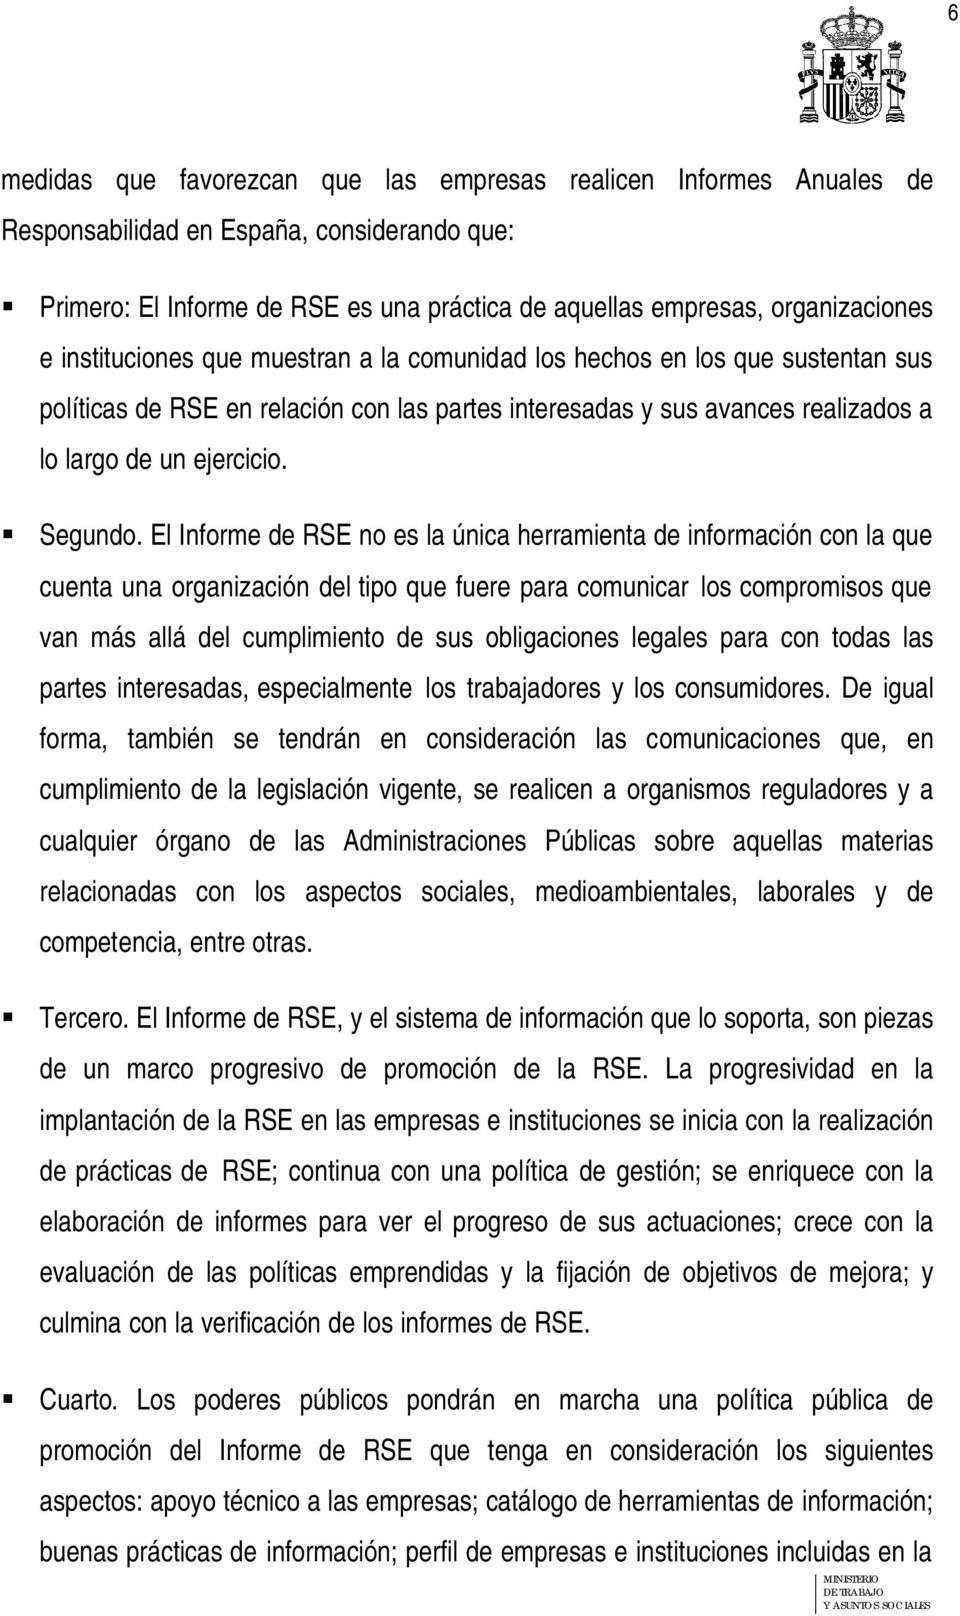 El Informe de RSE no es la única herramienta de información con la que cuenta una organización del tipo que fuere para comunicar los compromisos que van más allá del cumplimiento de sus obligaciones